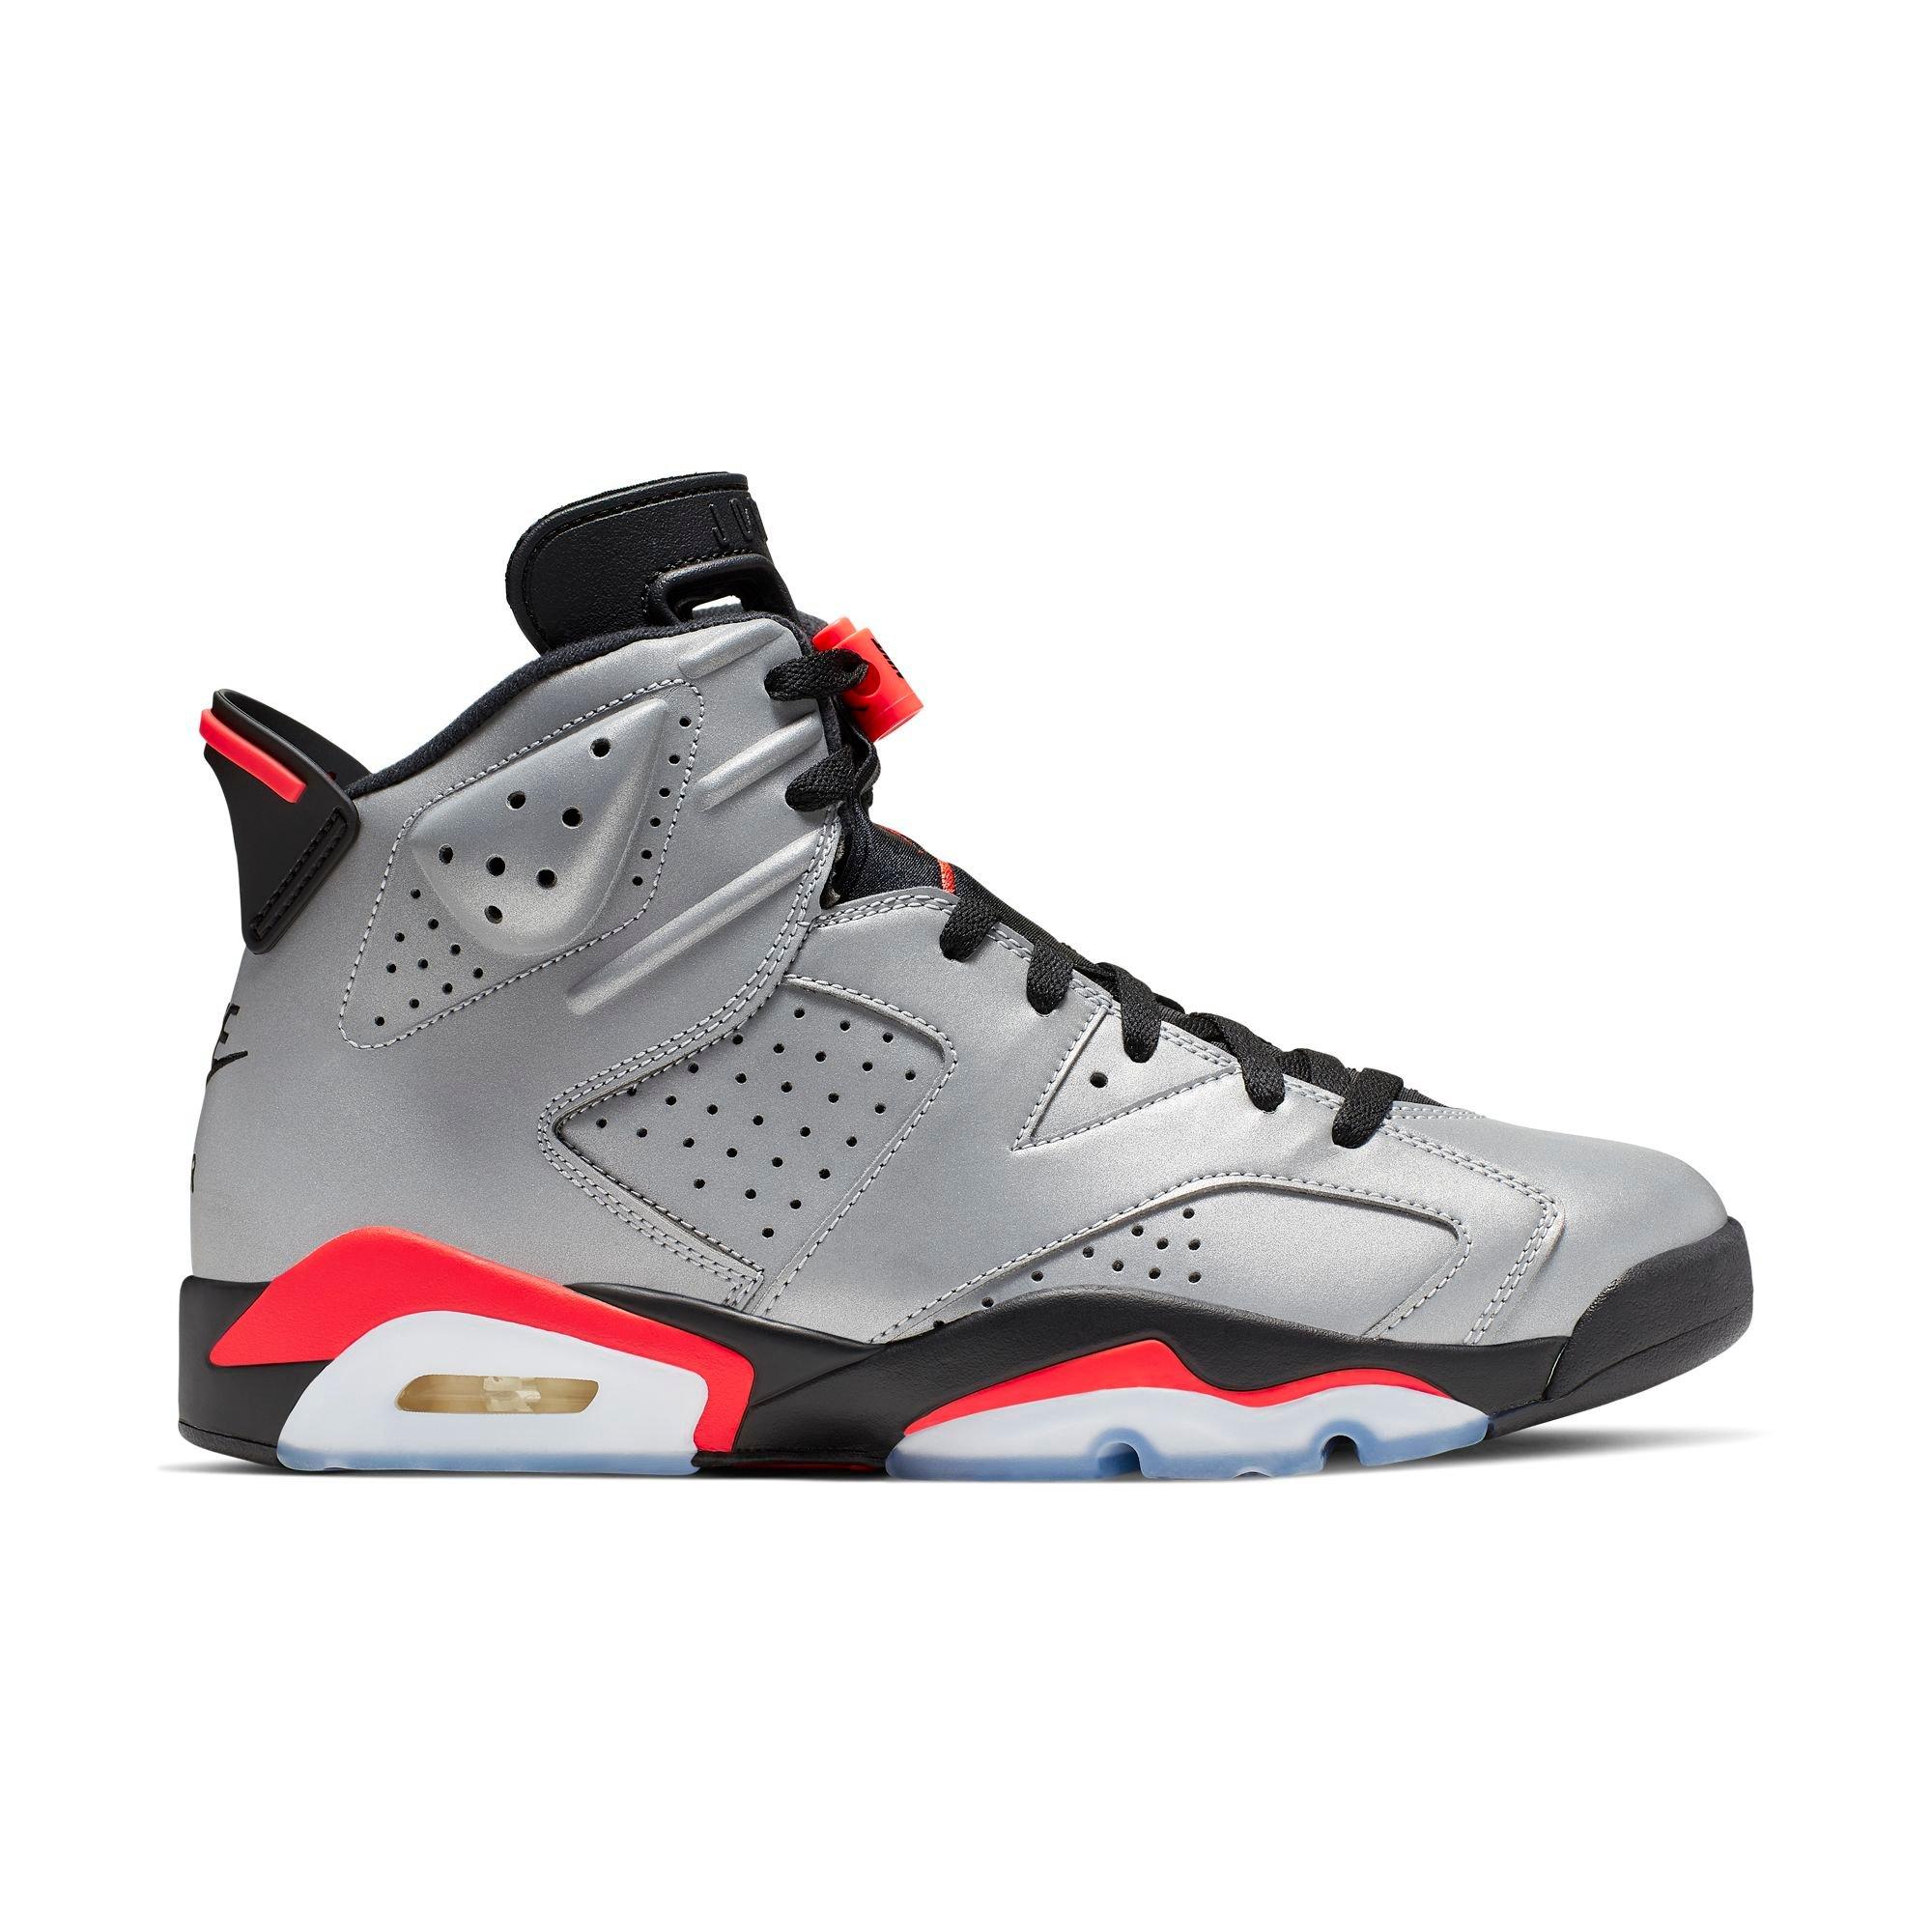 Sneaker Release: Air Jordan Retro 6 SP 